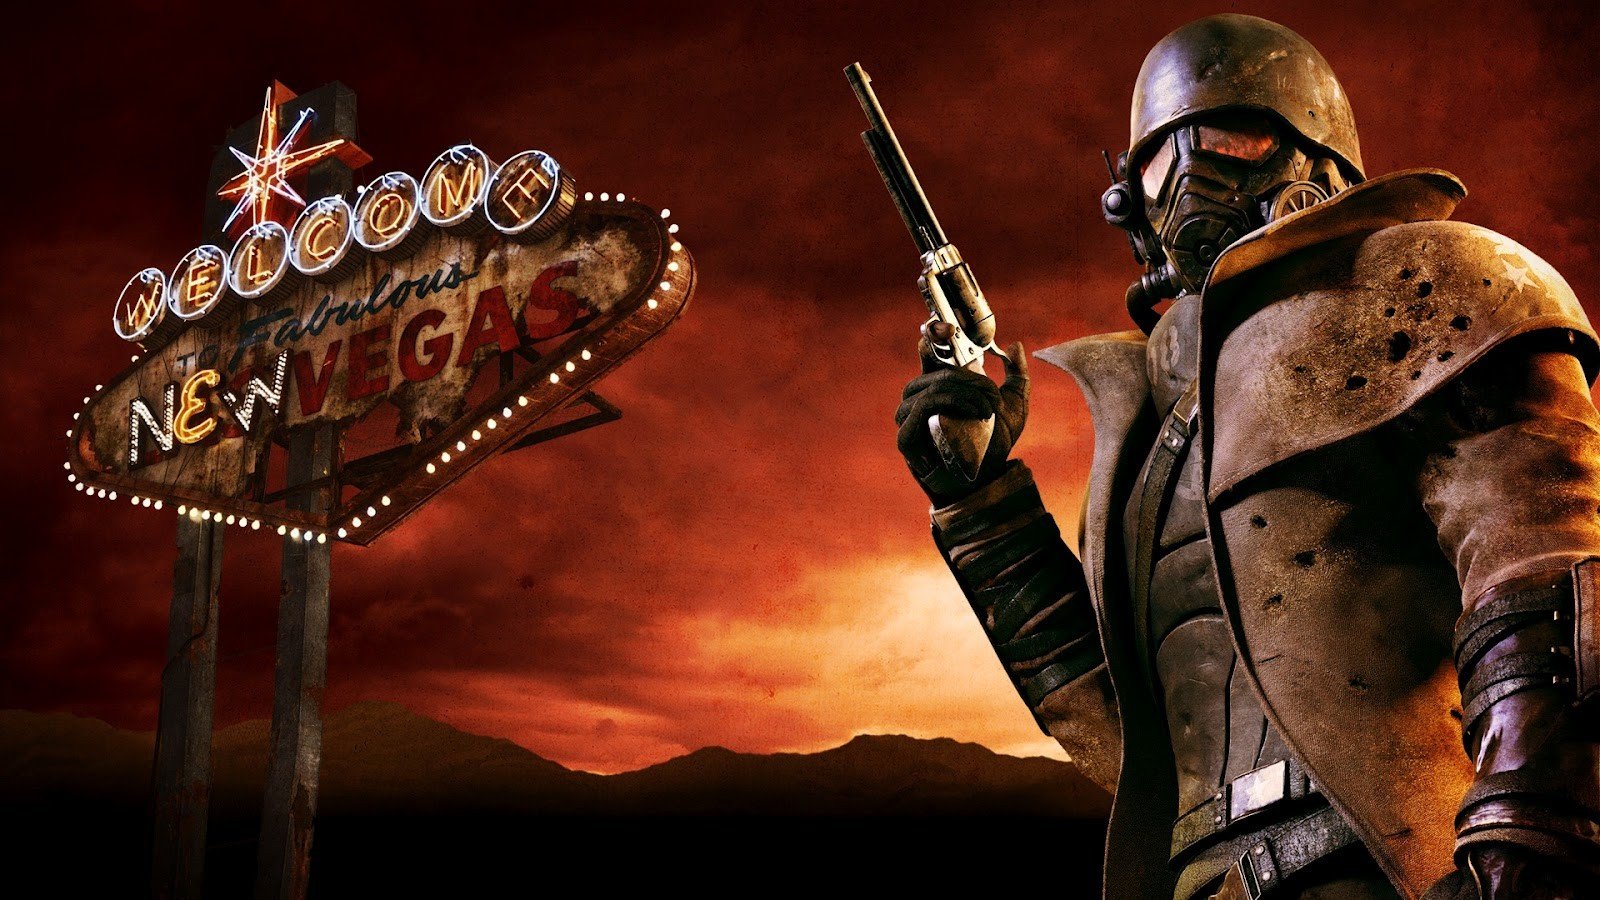 Fallout New Vegas - ПОЛНОЕ ПРОХОЖДЕНИЕ и СЕКРЕТЫ 60 СЕРИЯ приятного просмотра)))